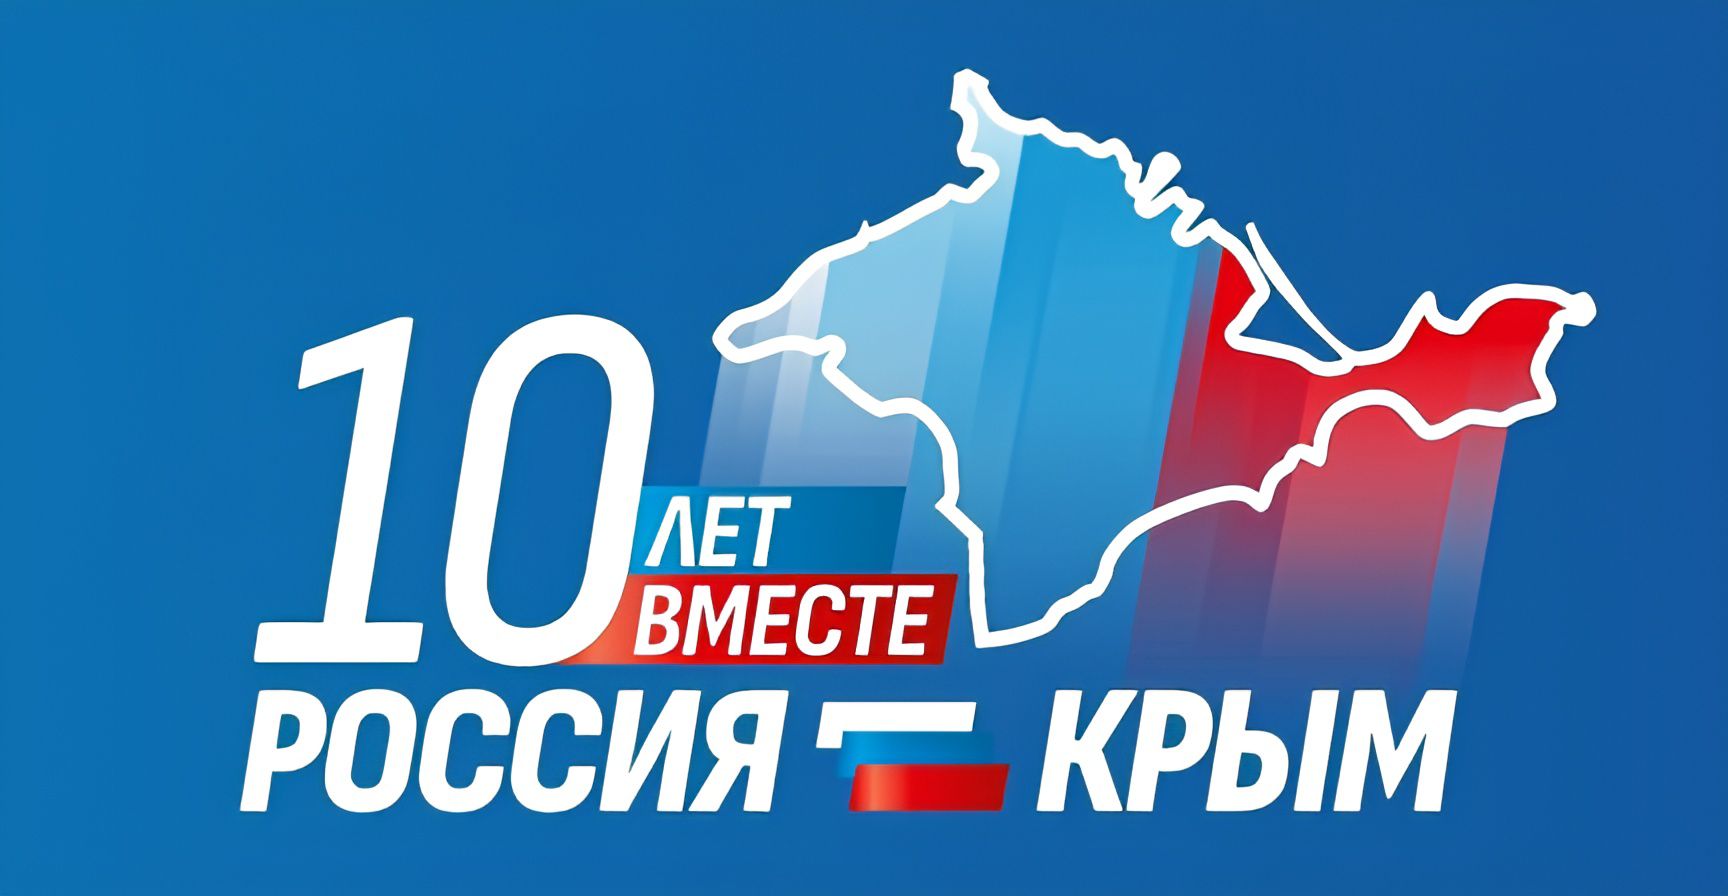 Поздравляем с Днем воссоединения Крыма с Россией!.